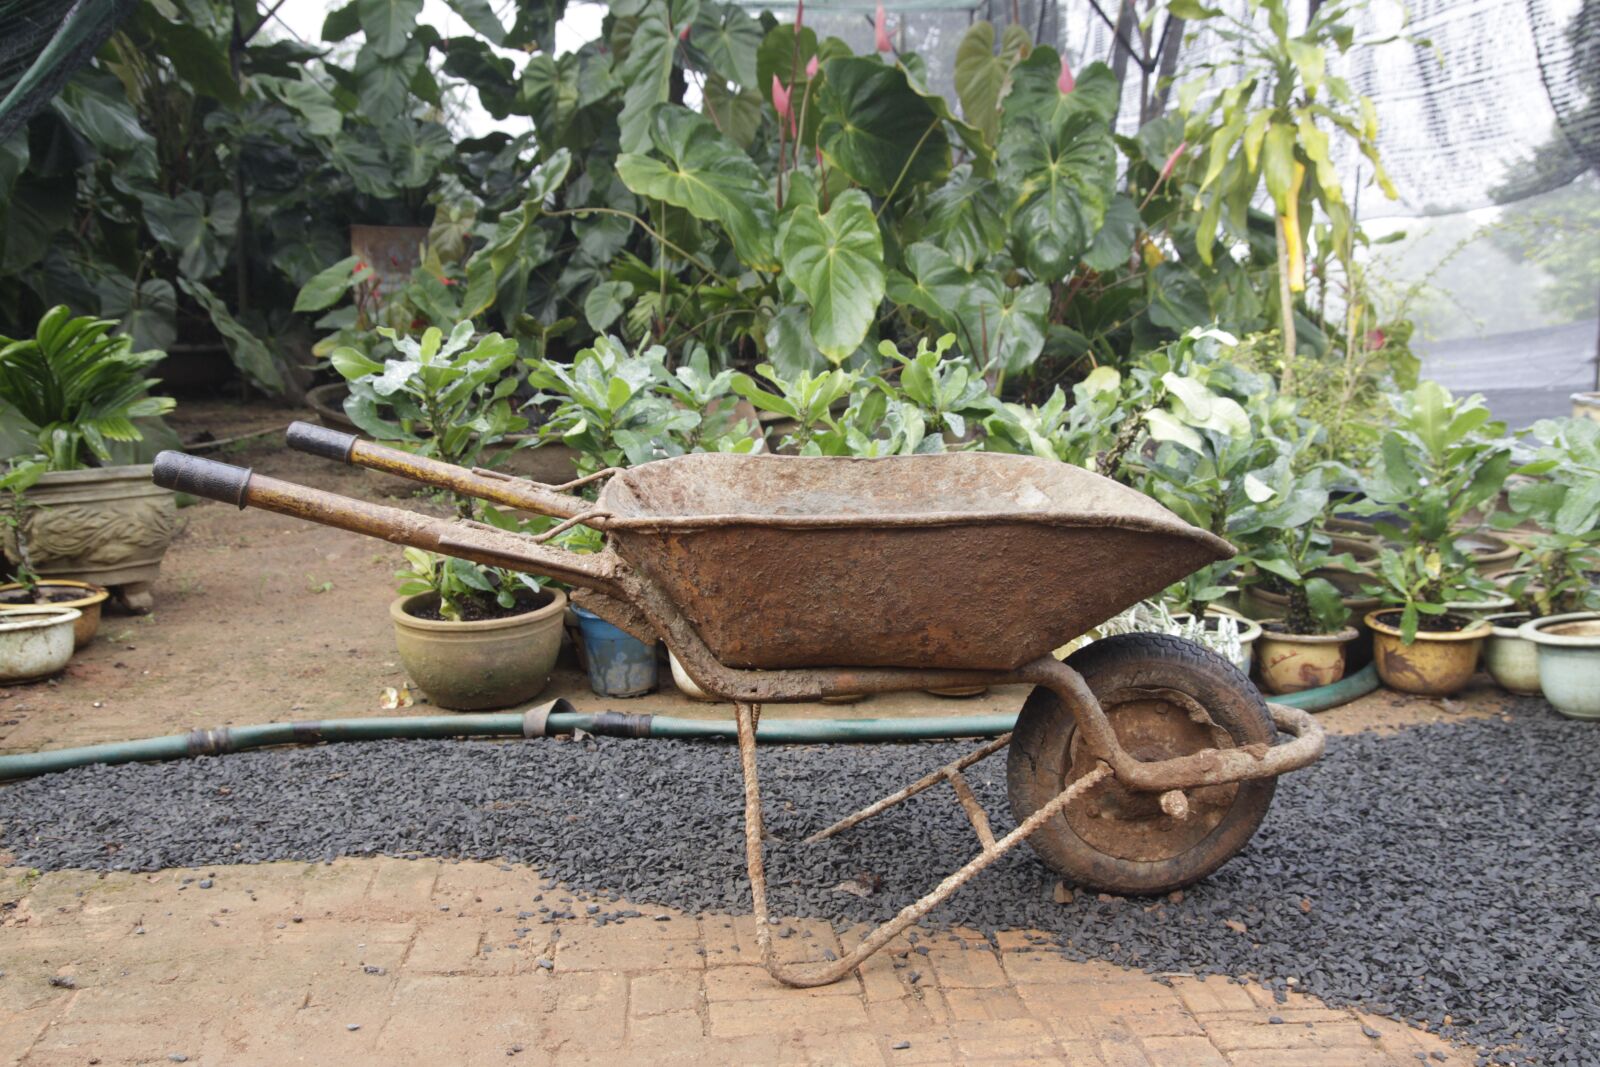 Canon EOS 50D sample photo. Garden, wheelbarrow, farming photography